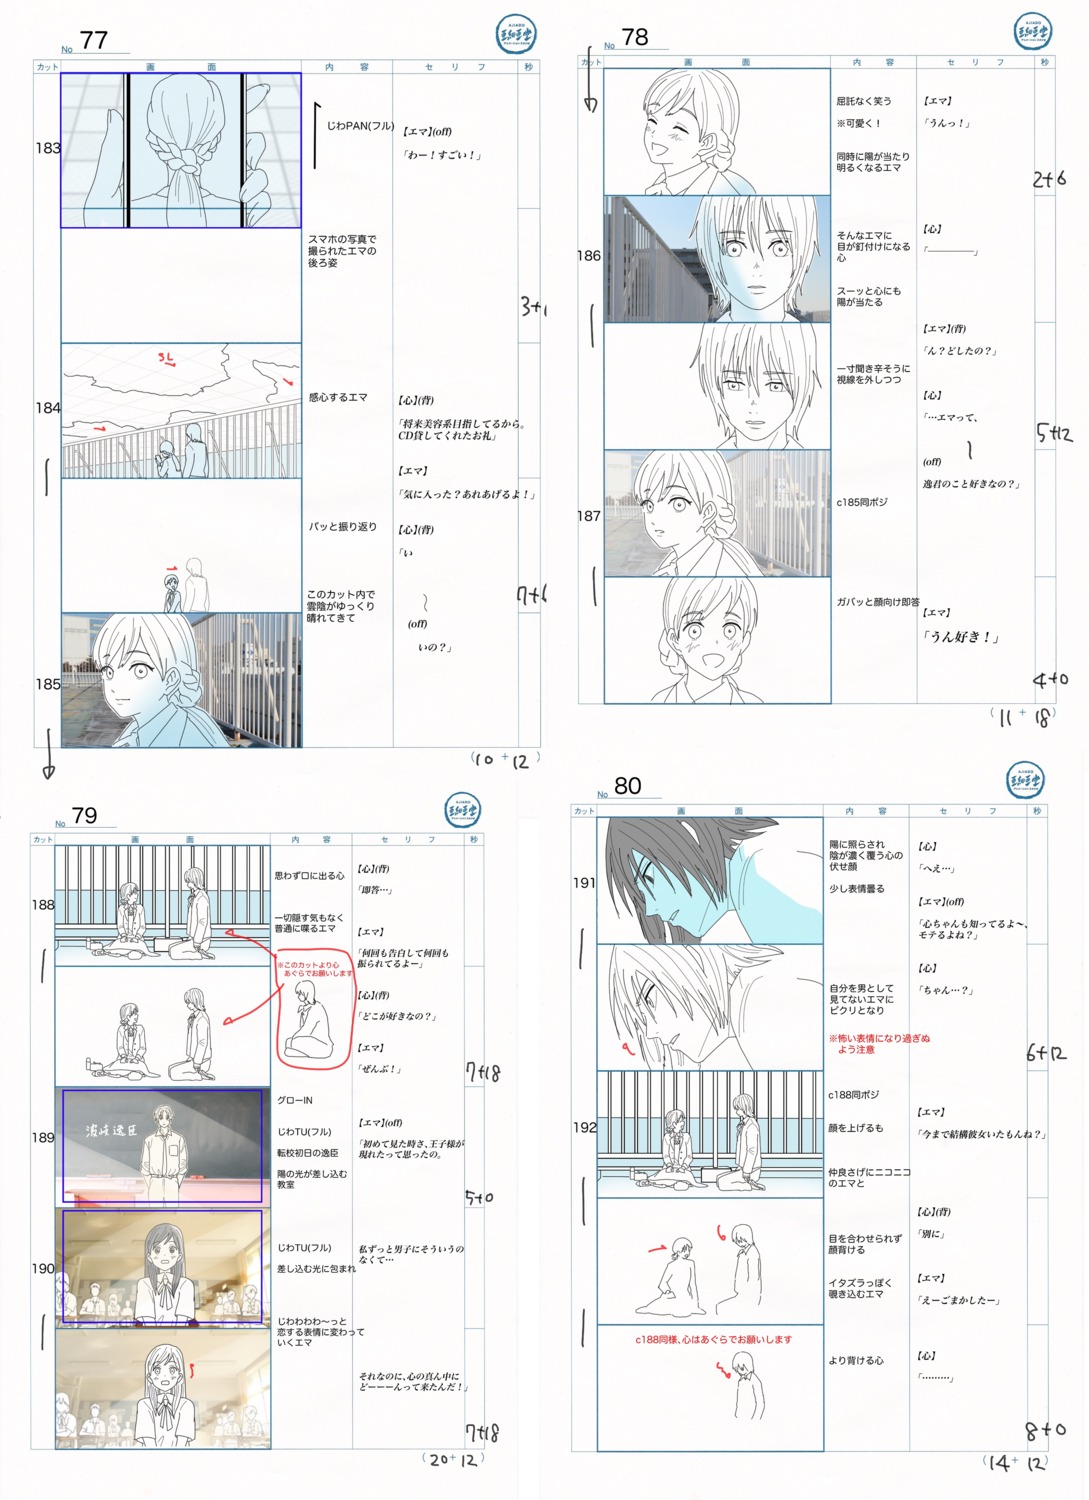 production_materials storyboard yubisaki_to_renren yuta_murano